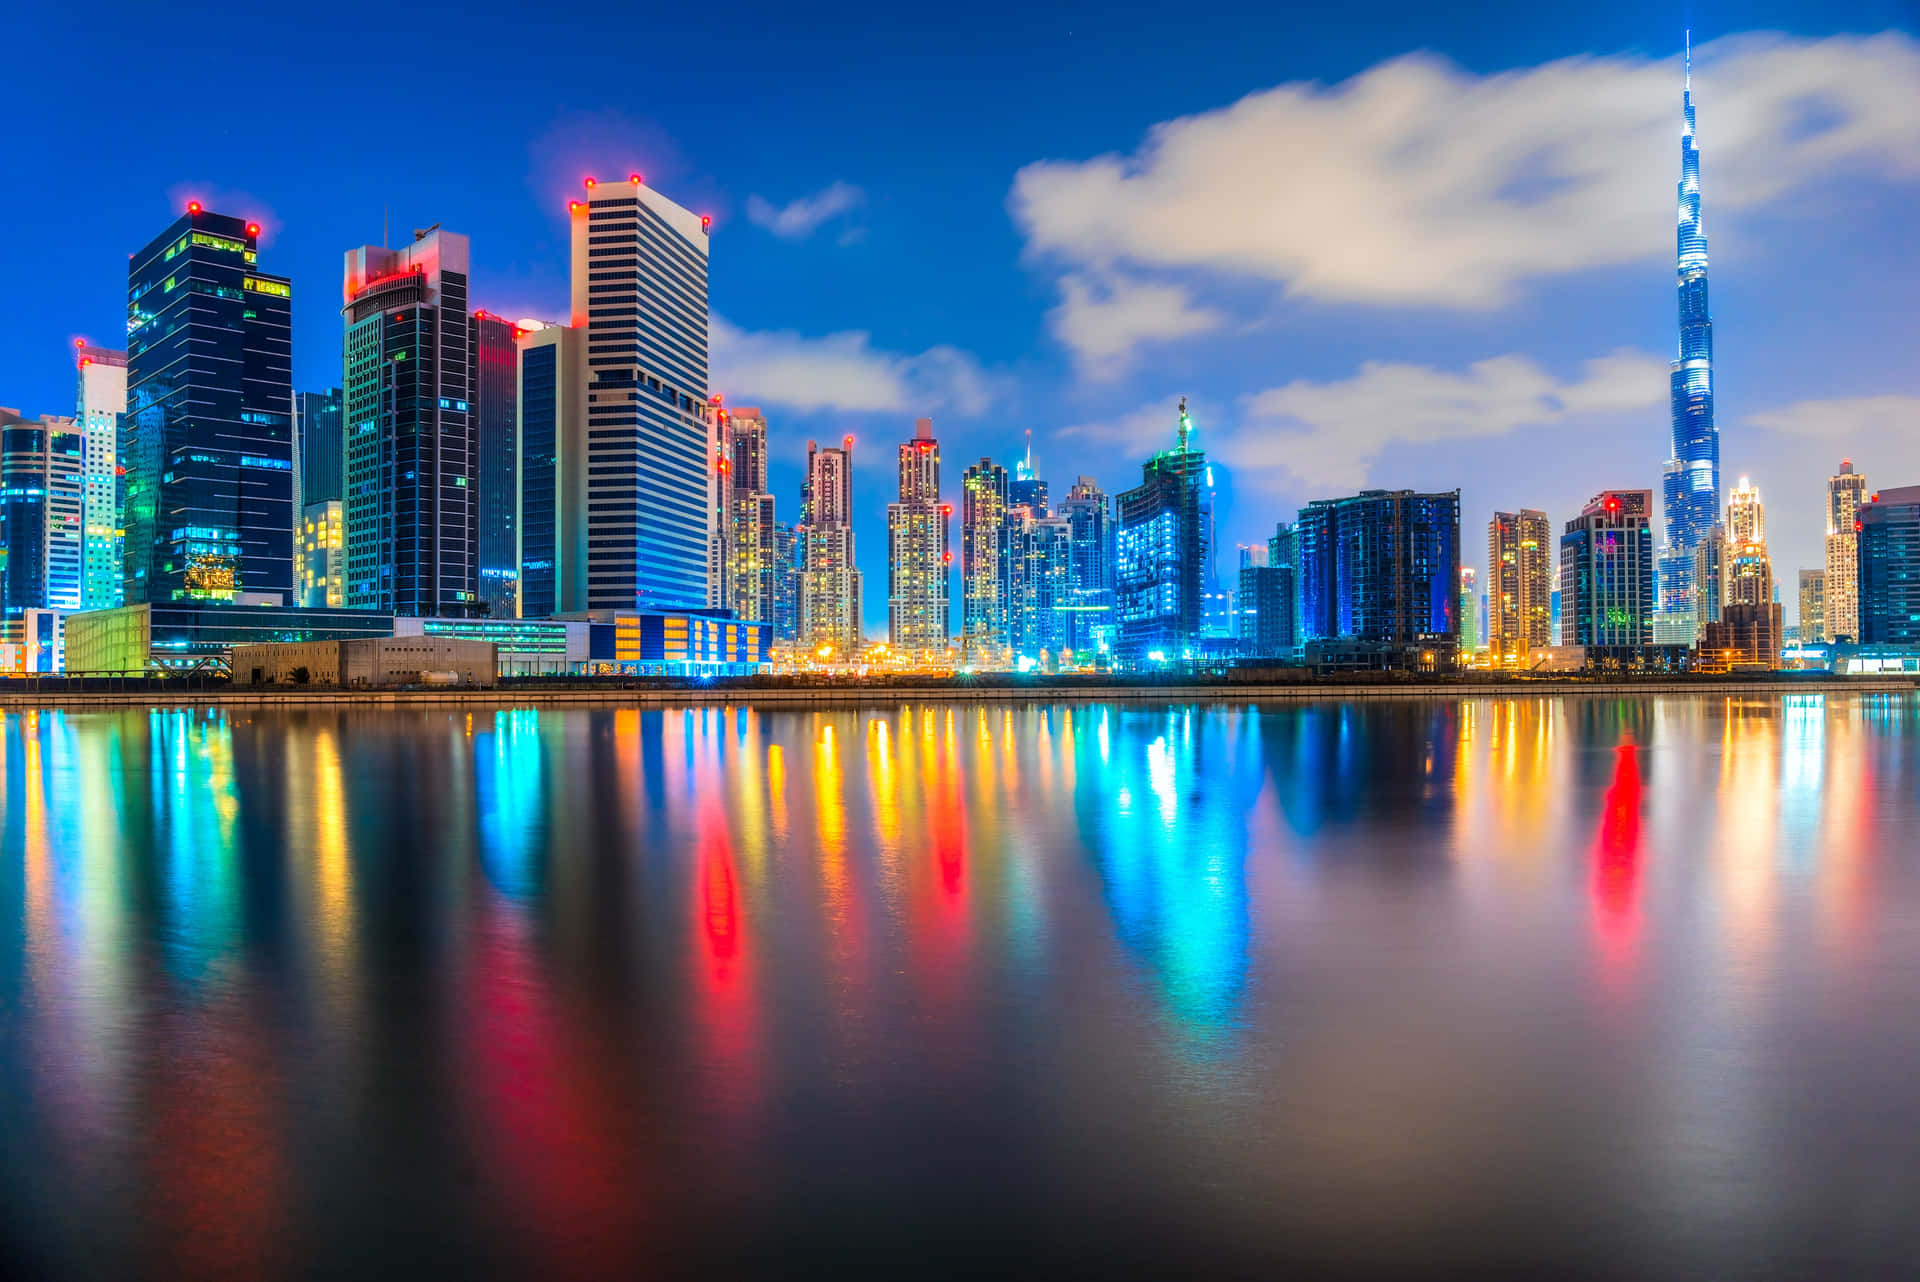 The vibrant skyline of Downtown Dubai